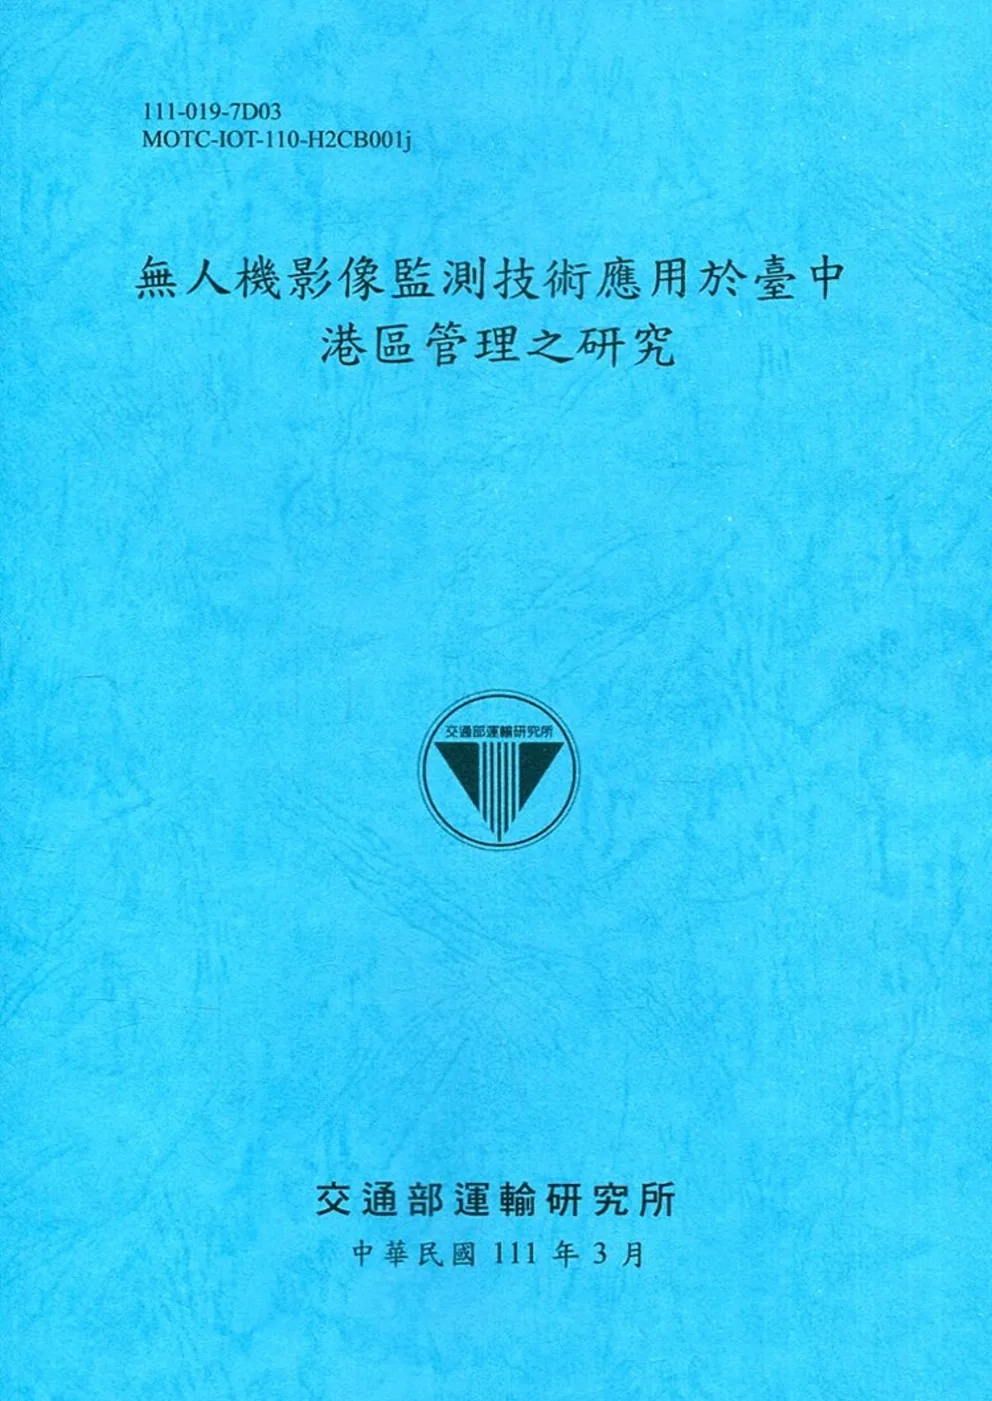 無人機影像監測技術應用於臺中港區管理之研究[111深藍]